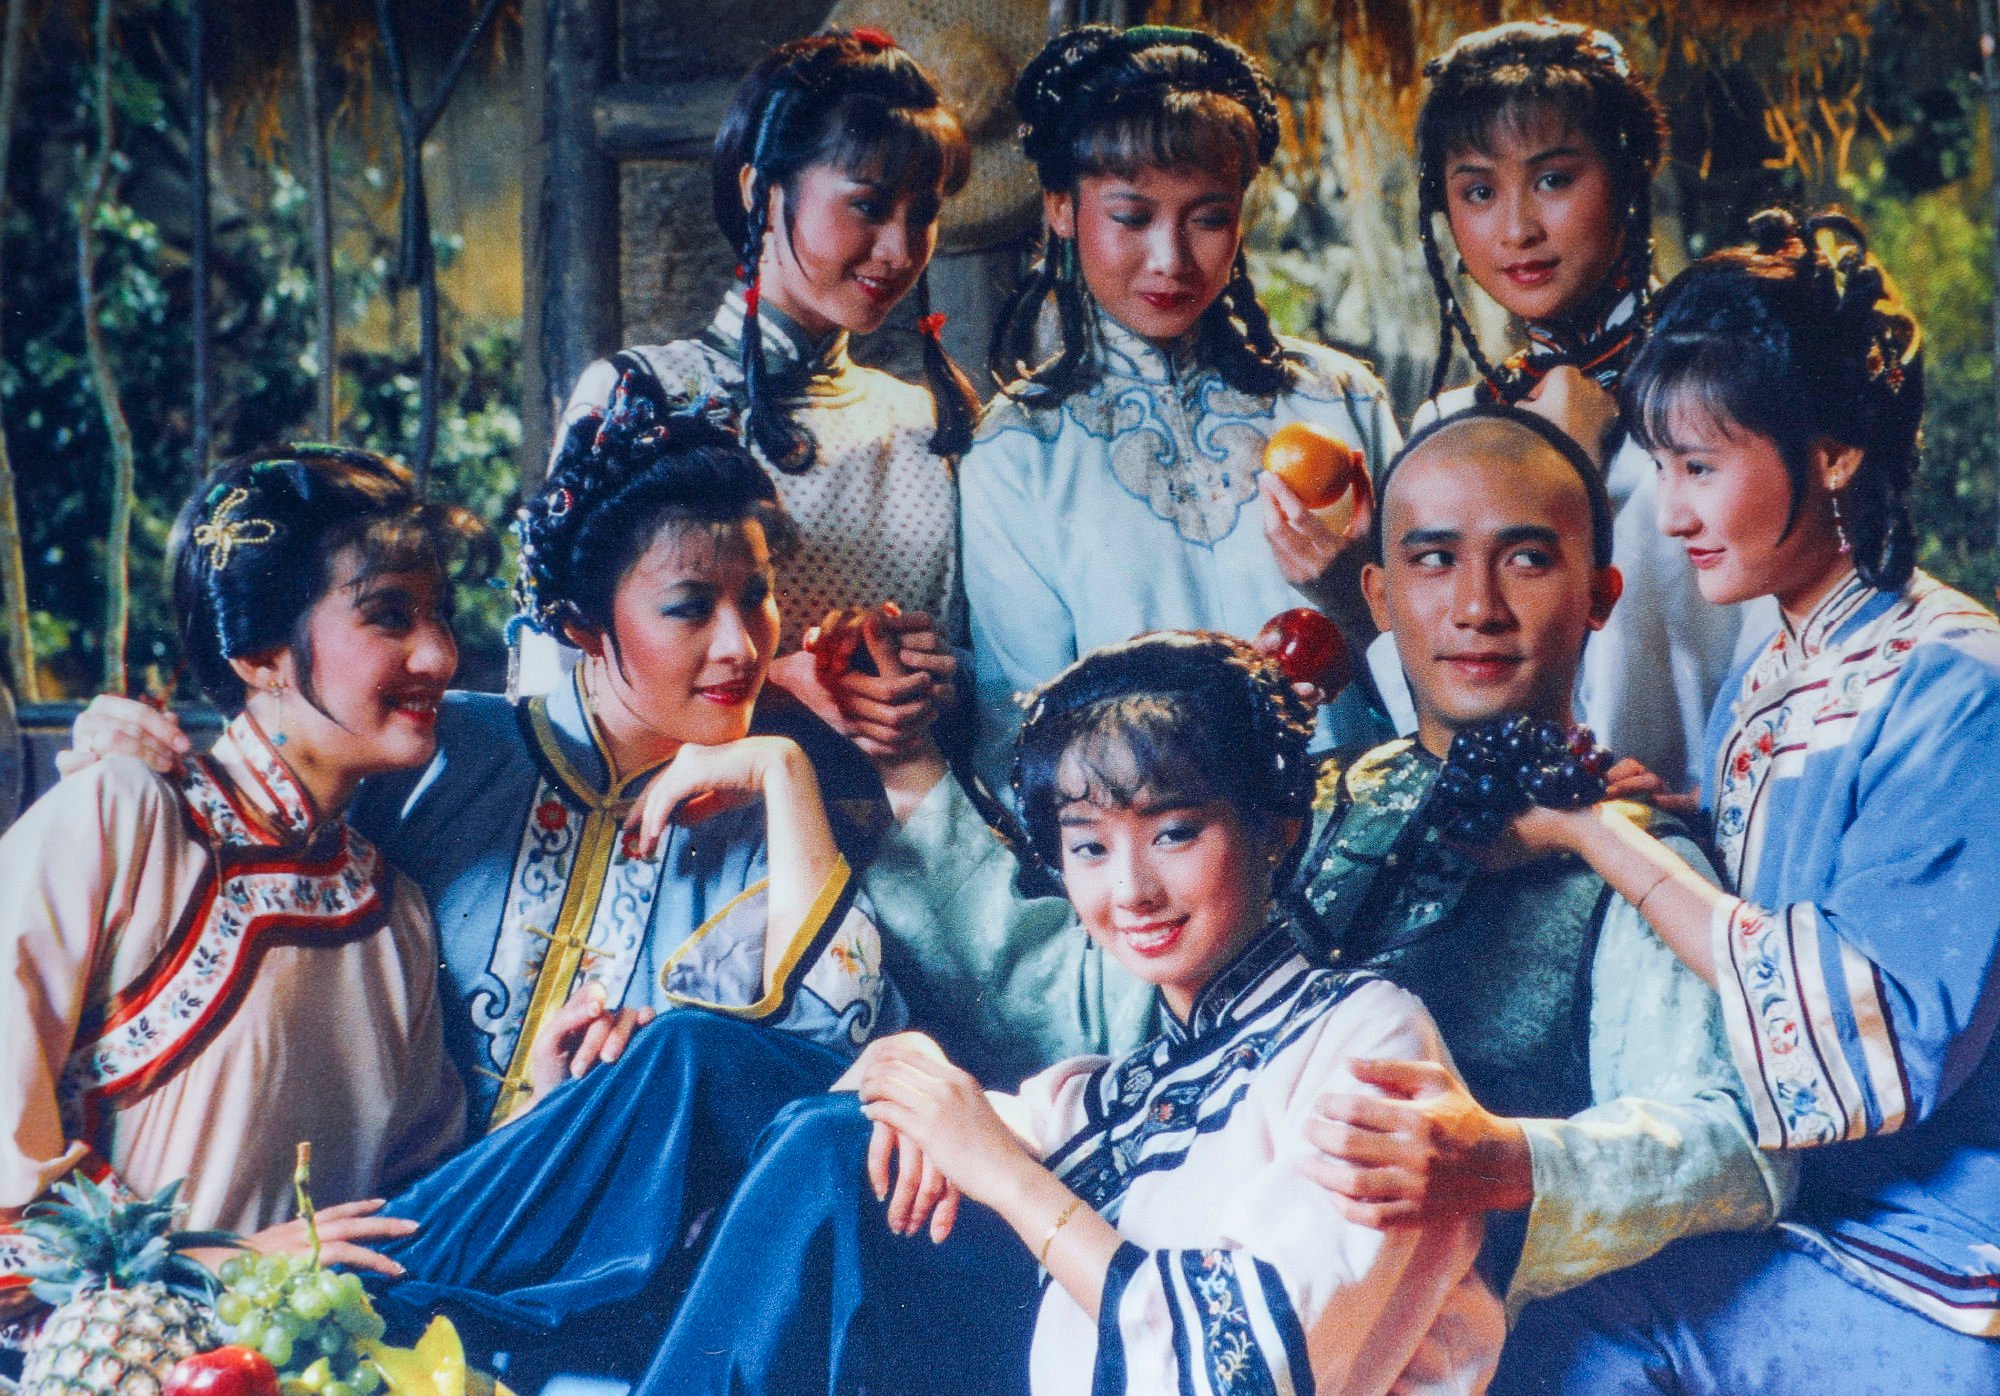 Lương Triều Vỹ (thứ hai từ phải sang) vai Vi Tiểu Bảo trong một cảnh phim truyền hình TVB “Hiệp Lộc Đỉnh Ký”.